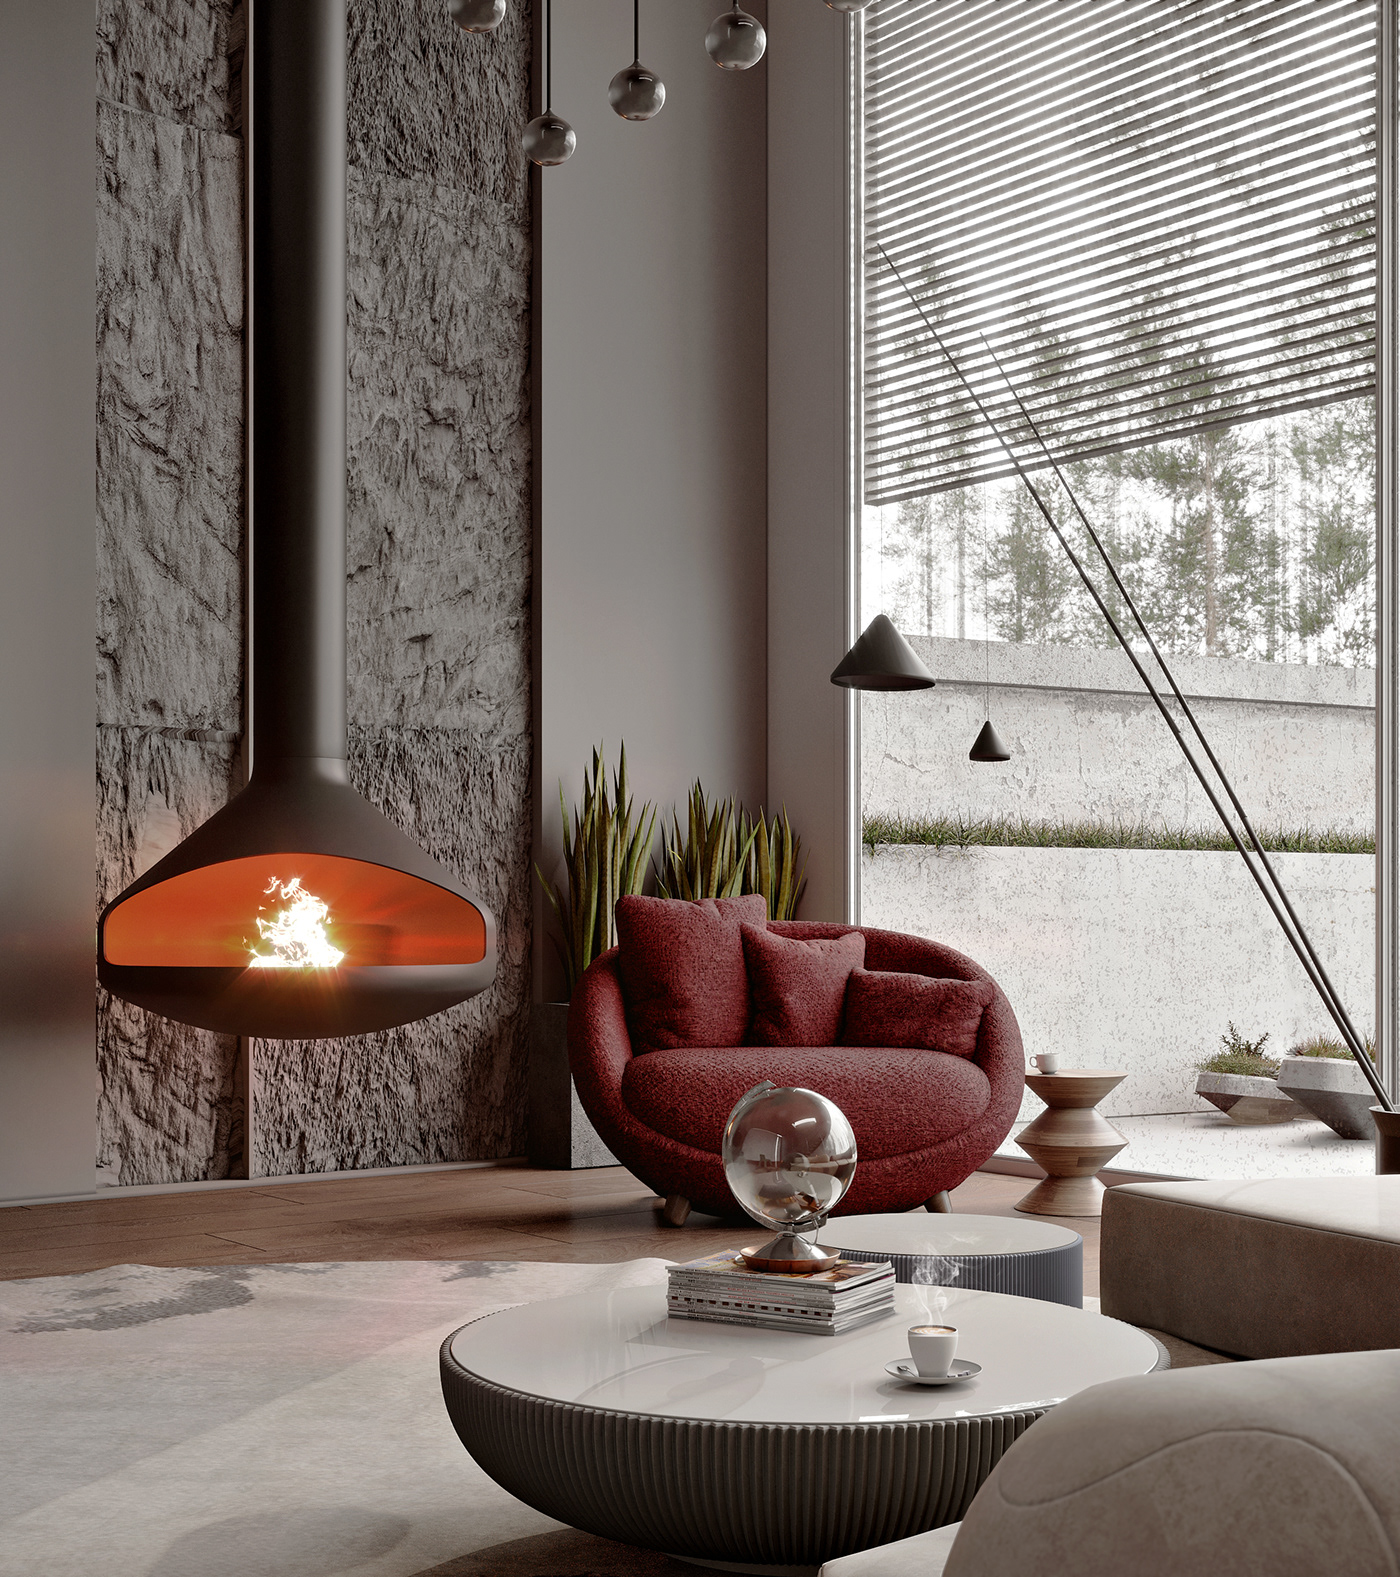 3dsmax archtiecture archviz house Interior Interior des interior design  modern VISUALI visualisation